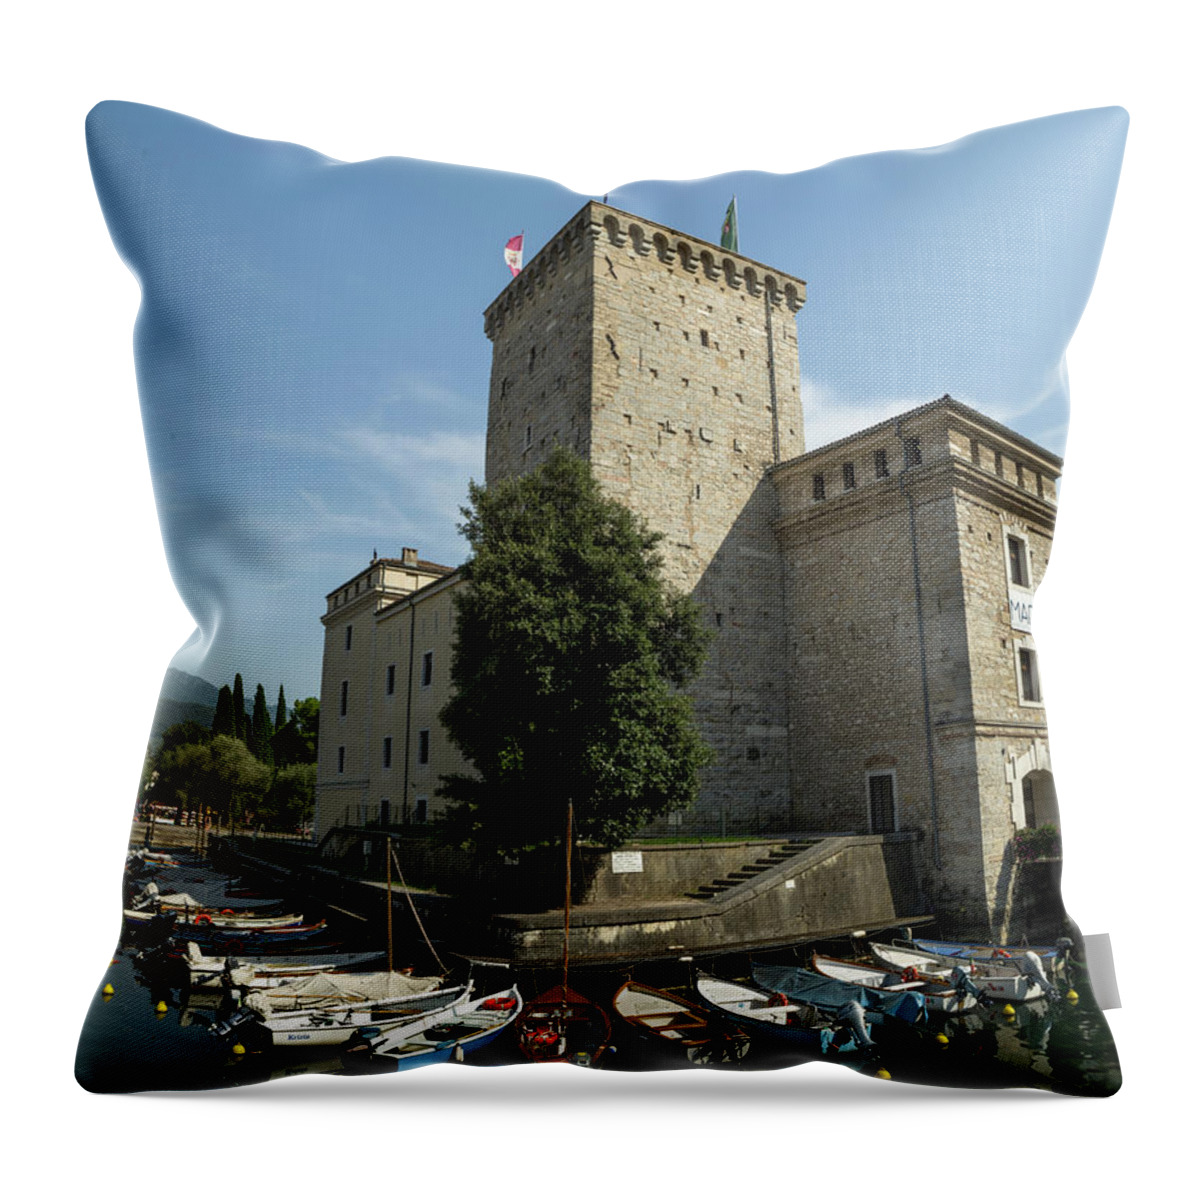 Garda Throw Pillow featuring the photograph Riva del Garda Fortress by Nicola Aristolao